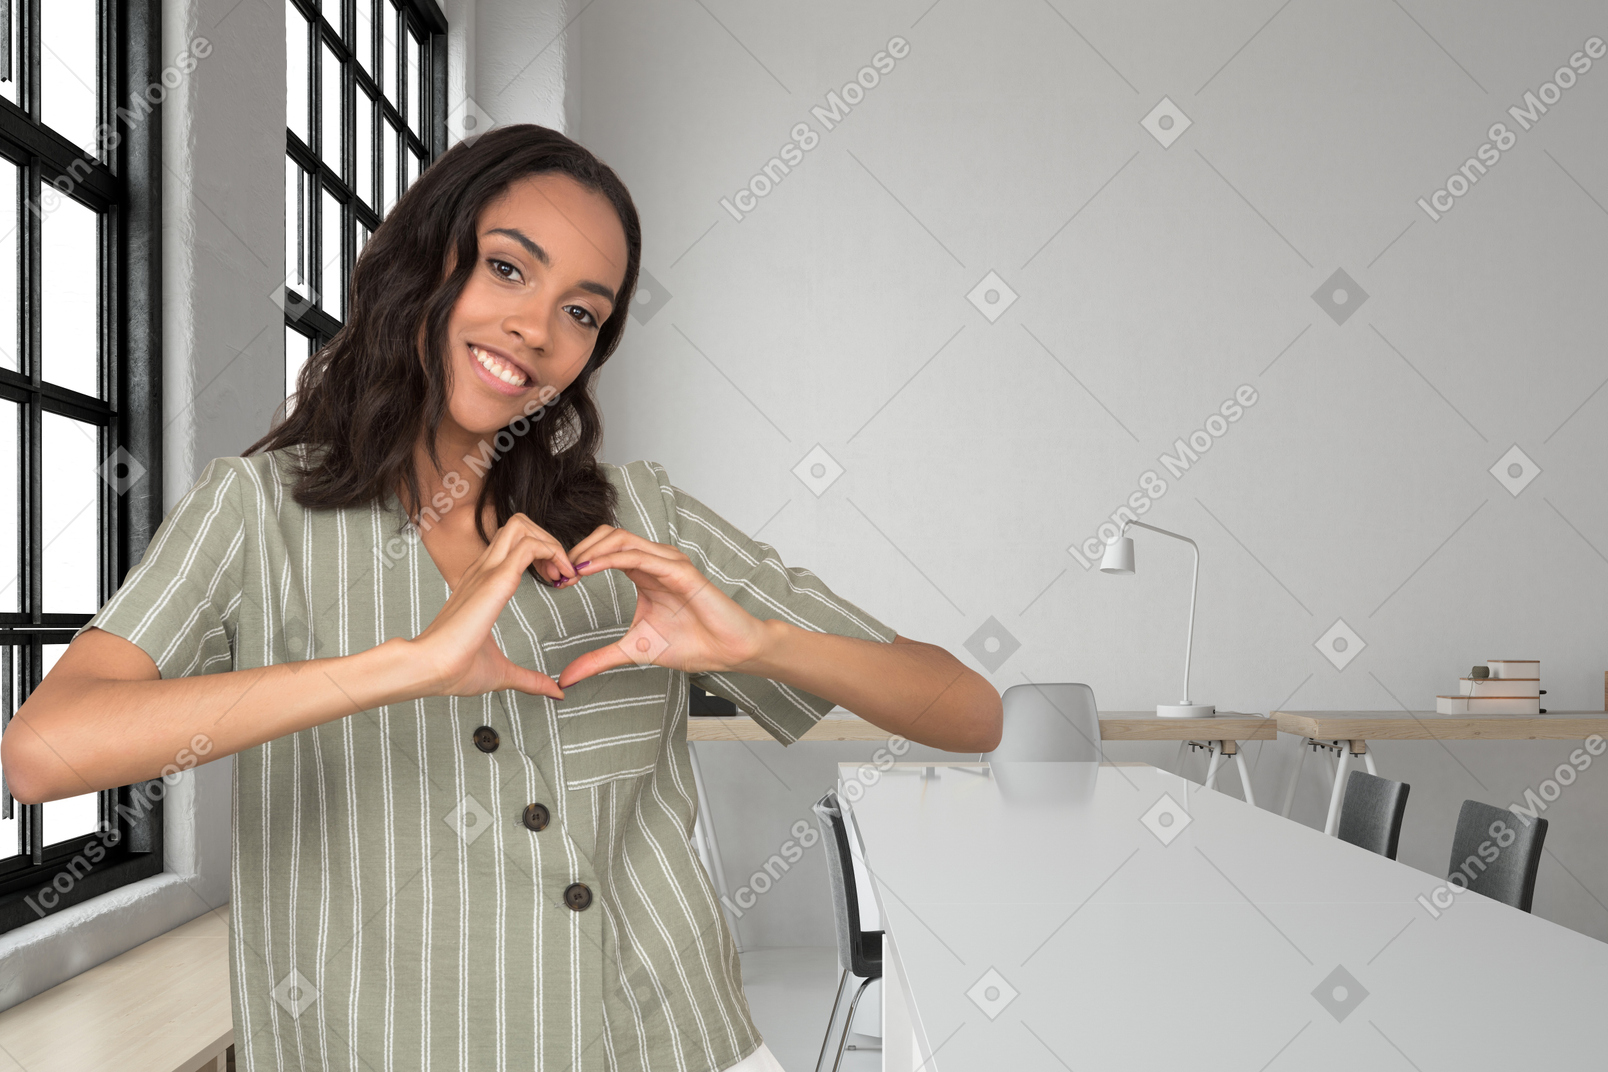 Woman doing heart hands